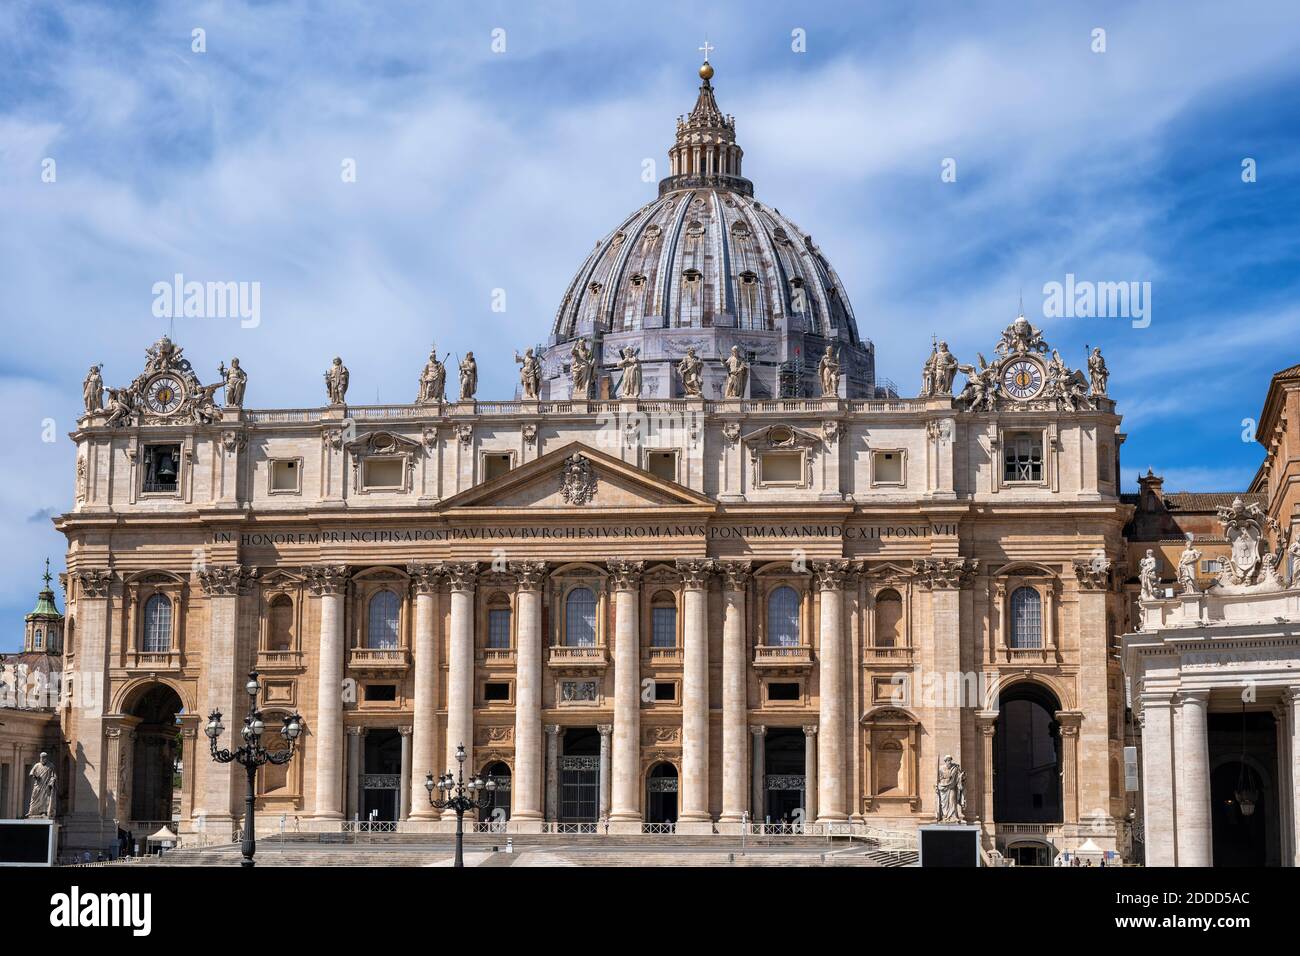 Façade de la basilique Saint-Pierre en ville, Cité du Vatican, Rome, Italie Banque D'Images